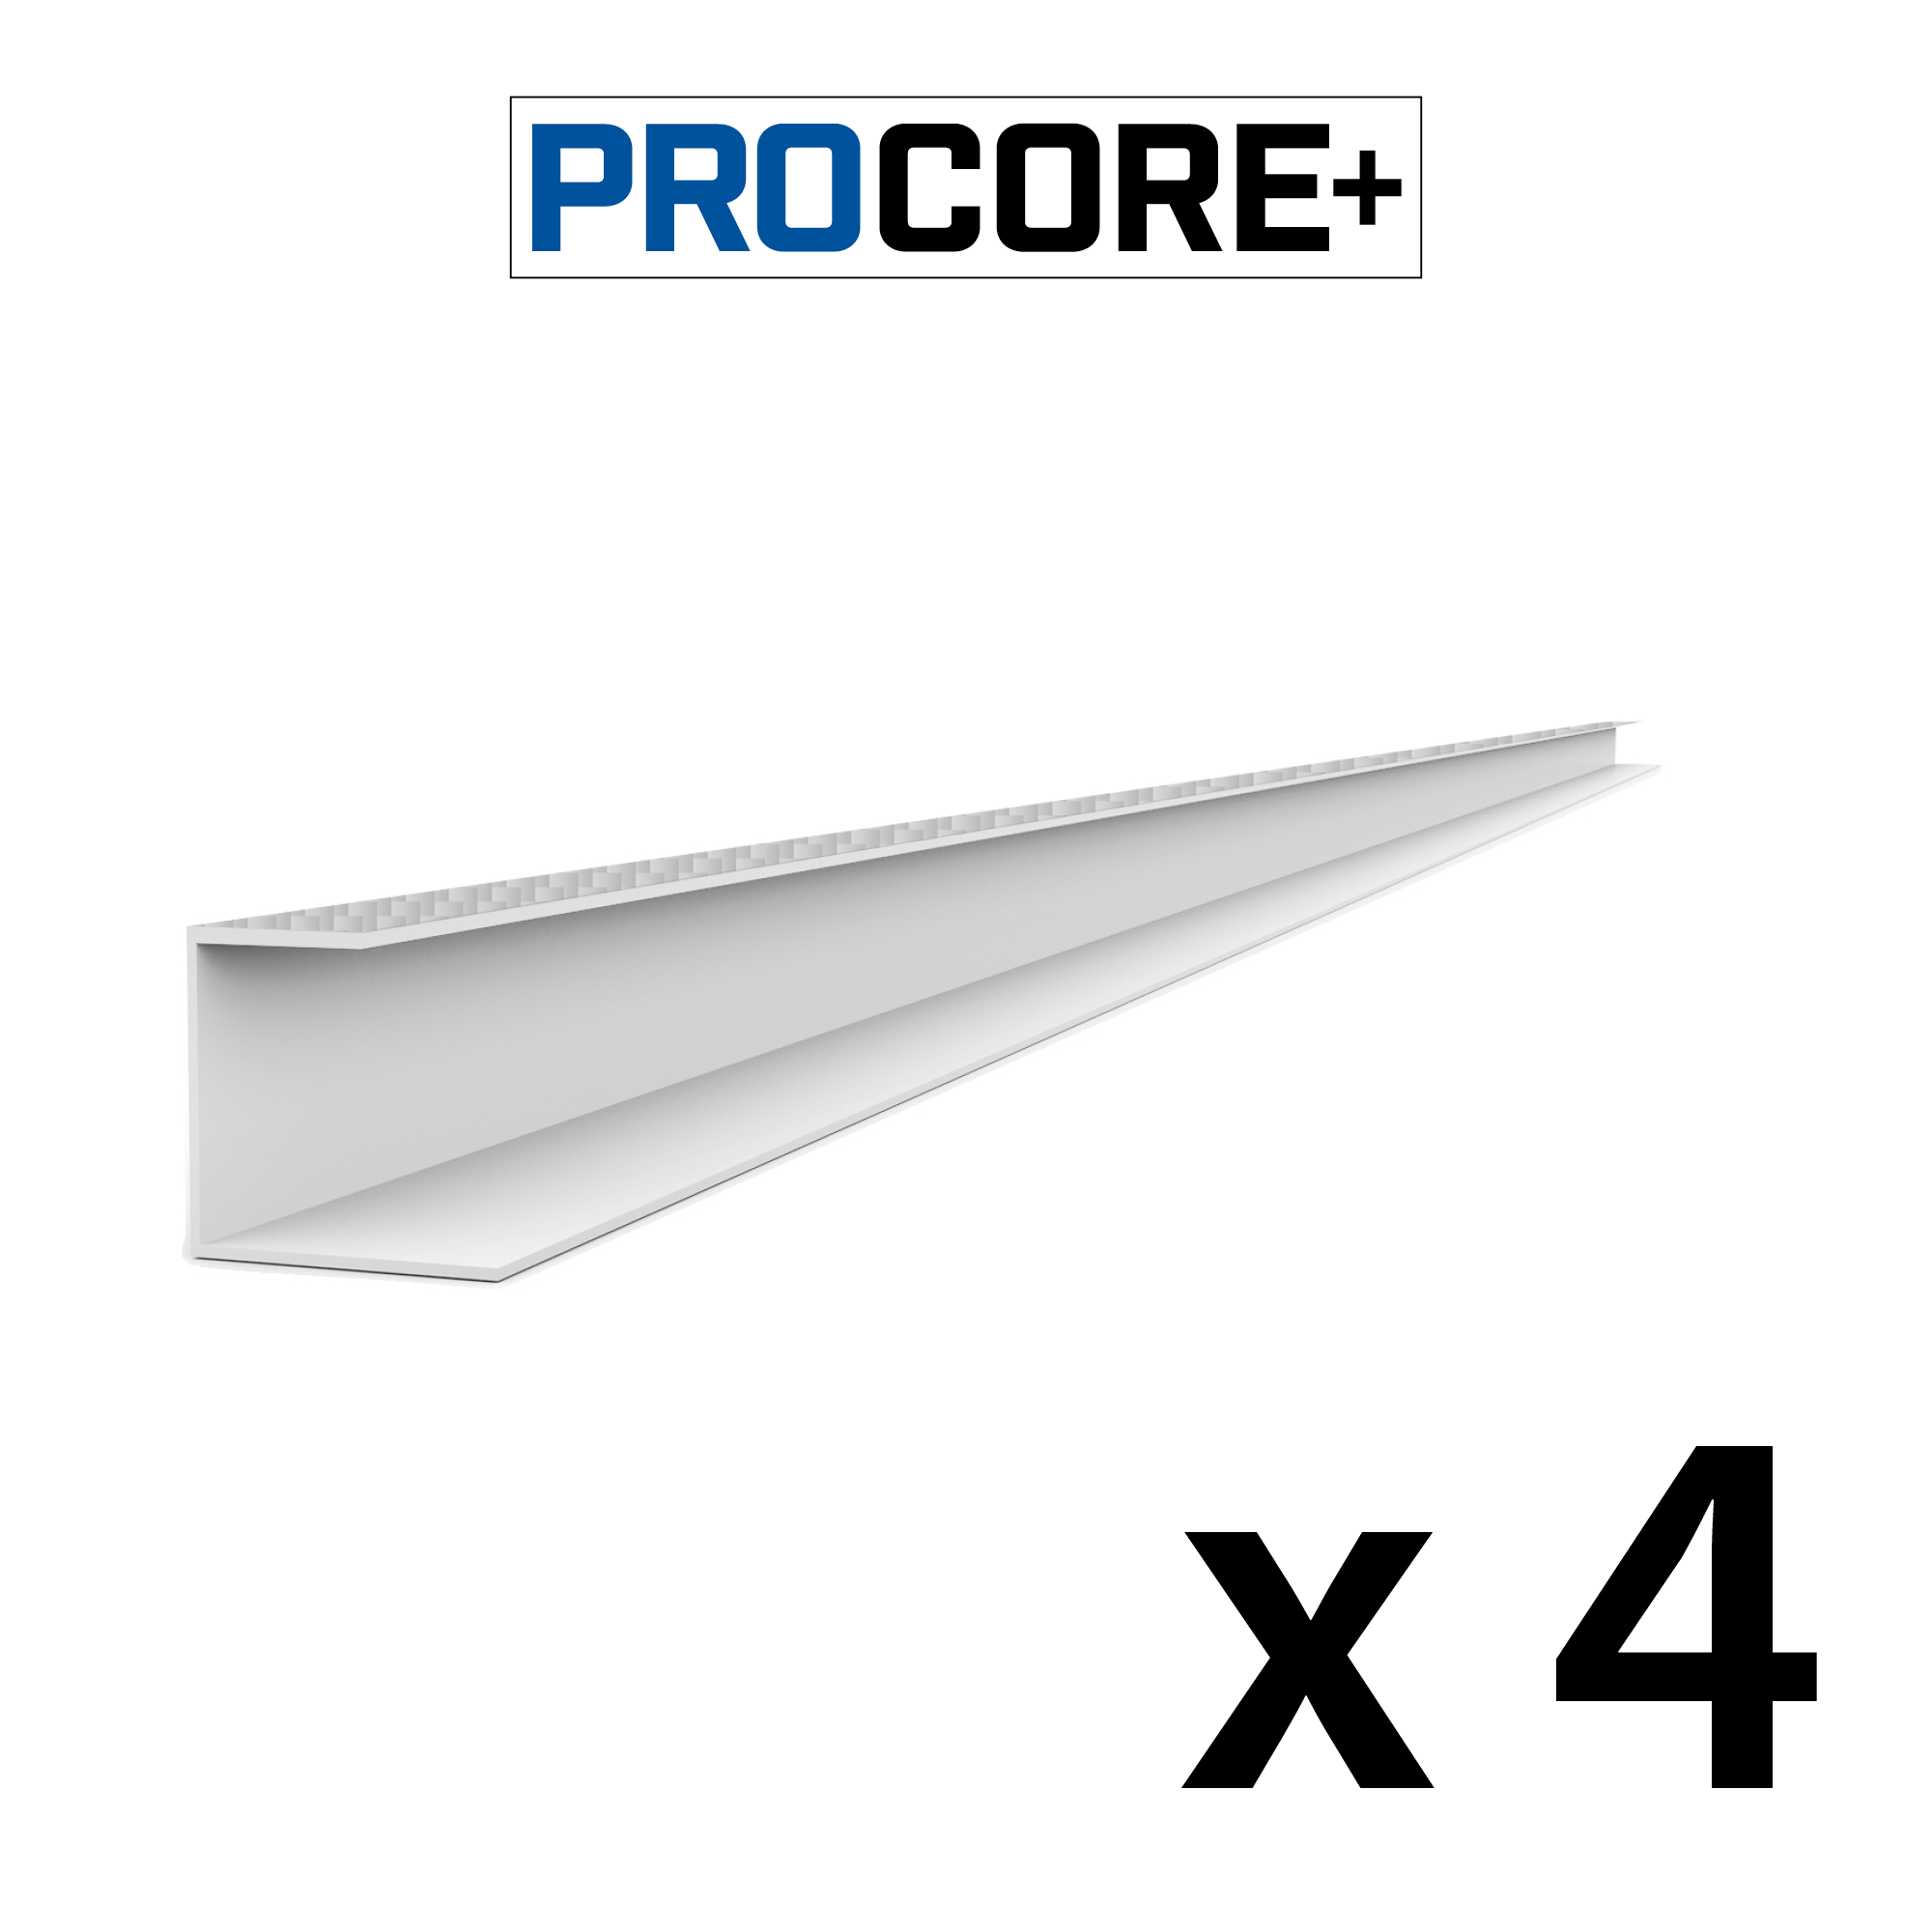 8 ft. PROCORE+ Silver carbon fiber PVC Side Trim Pack